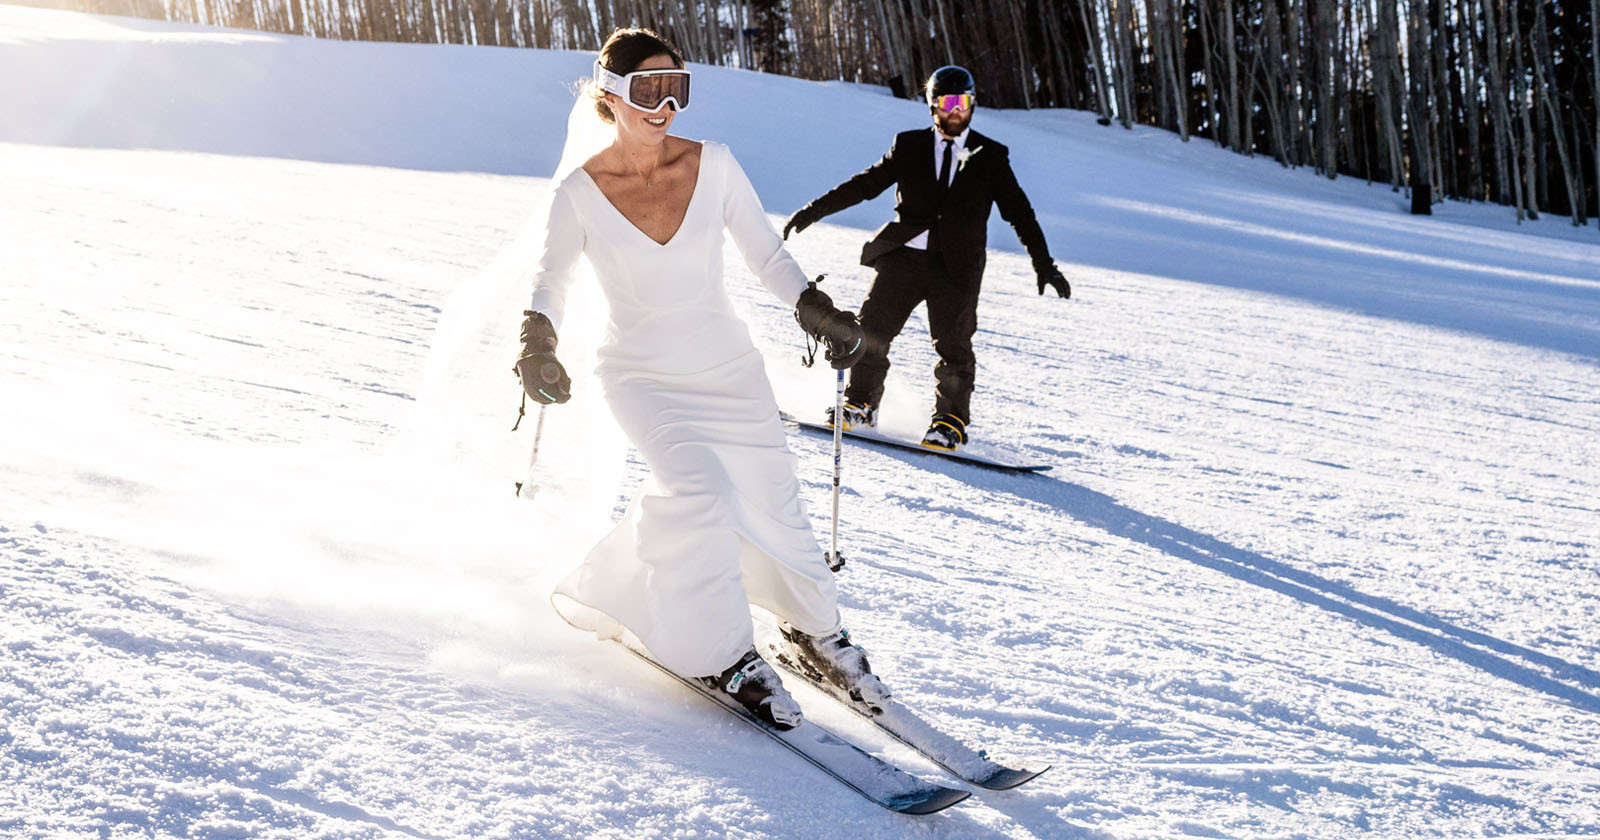  ski wedding photographer finds niche shooting newlyweds slopes 